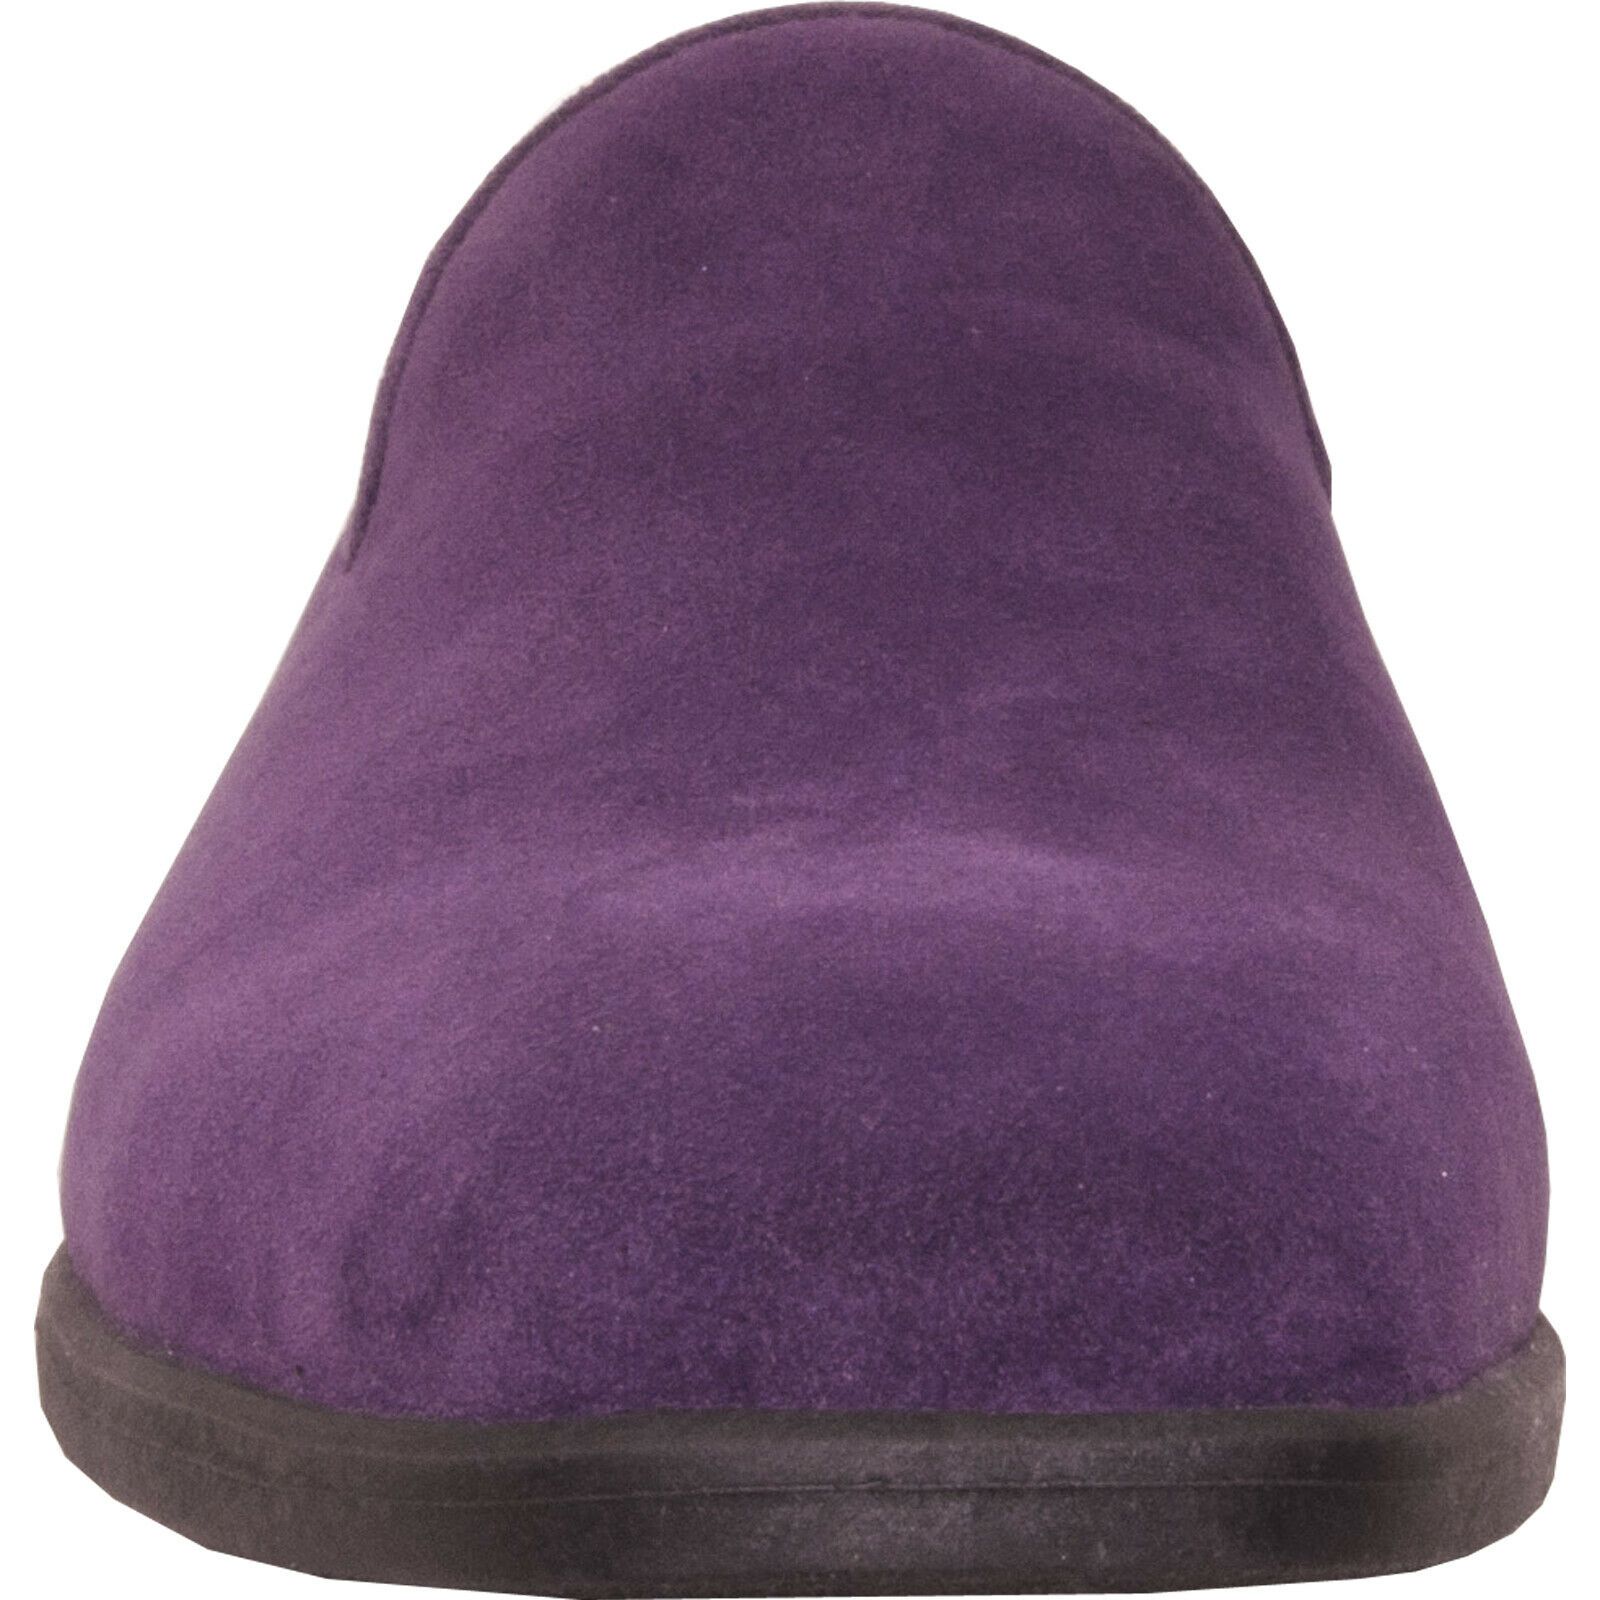 Vangelo Men Dress Shoe KING-5 Loafer Slip On Formal Tuxedo for Prom and Wedding Purple 10M - image 2 of 7